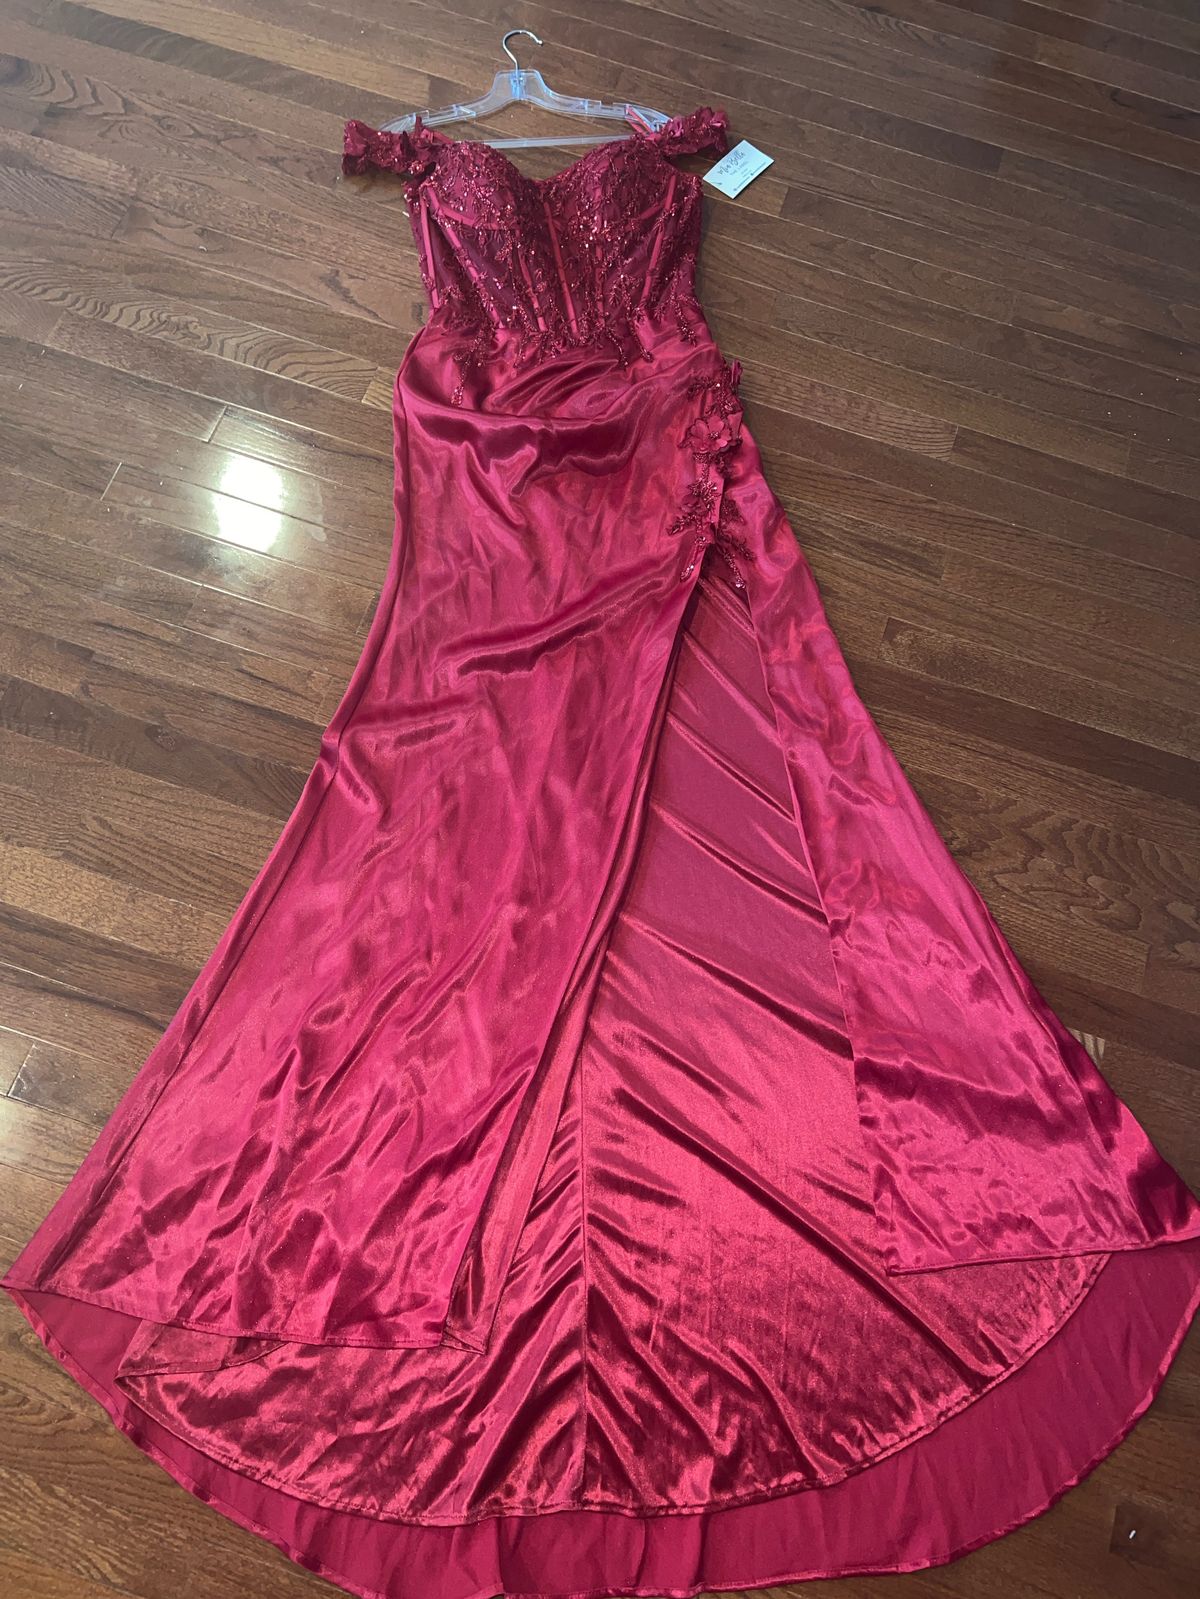 Cinderella Divine Size 10 Prom Off The Shoulder Red Side Slit Dress on Queenly